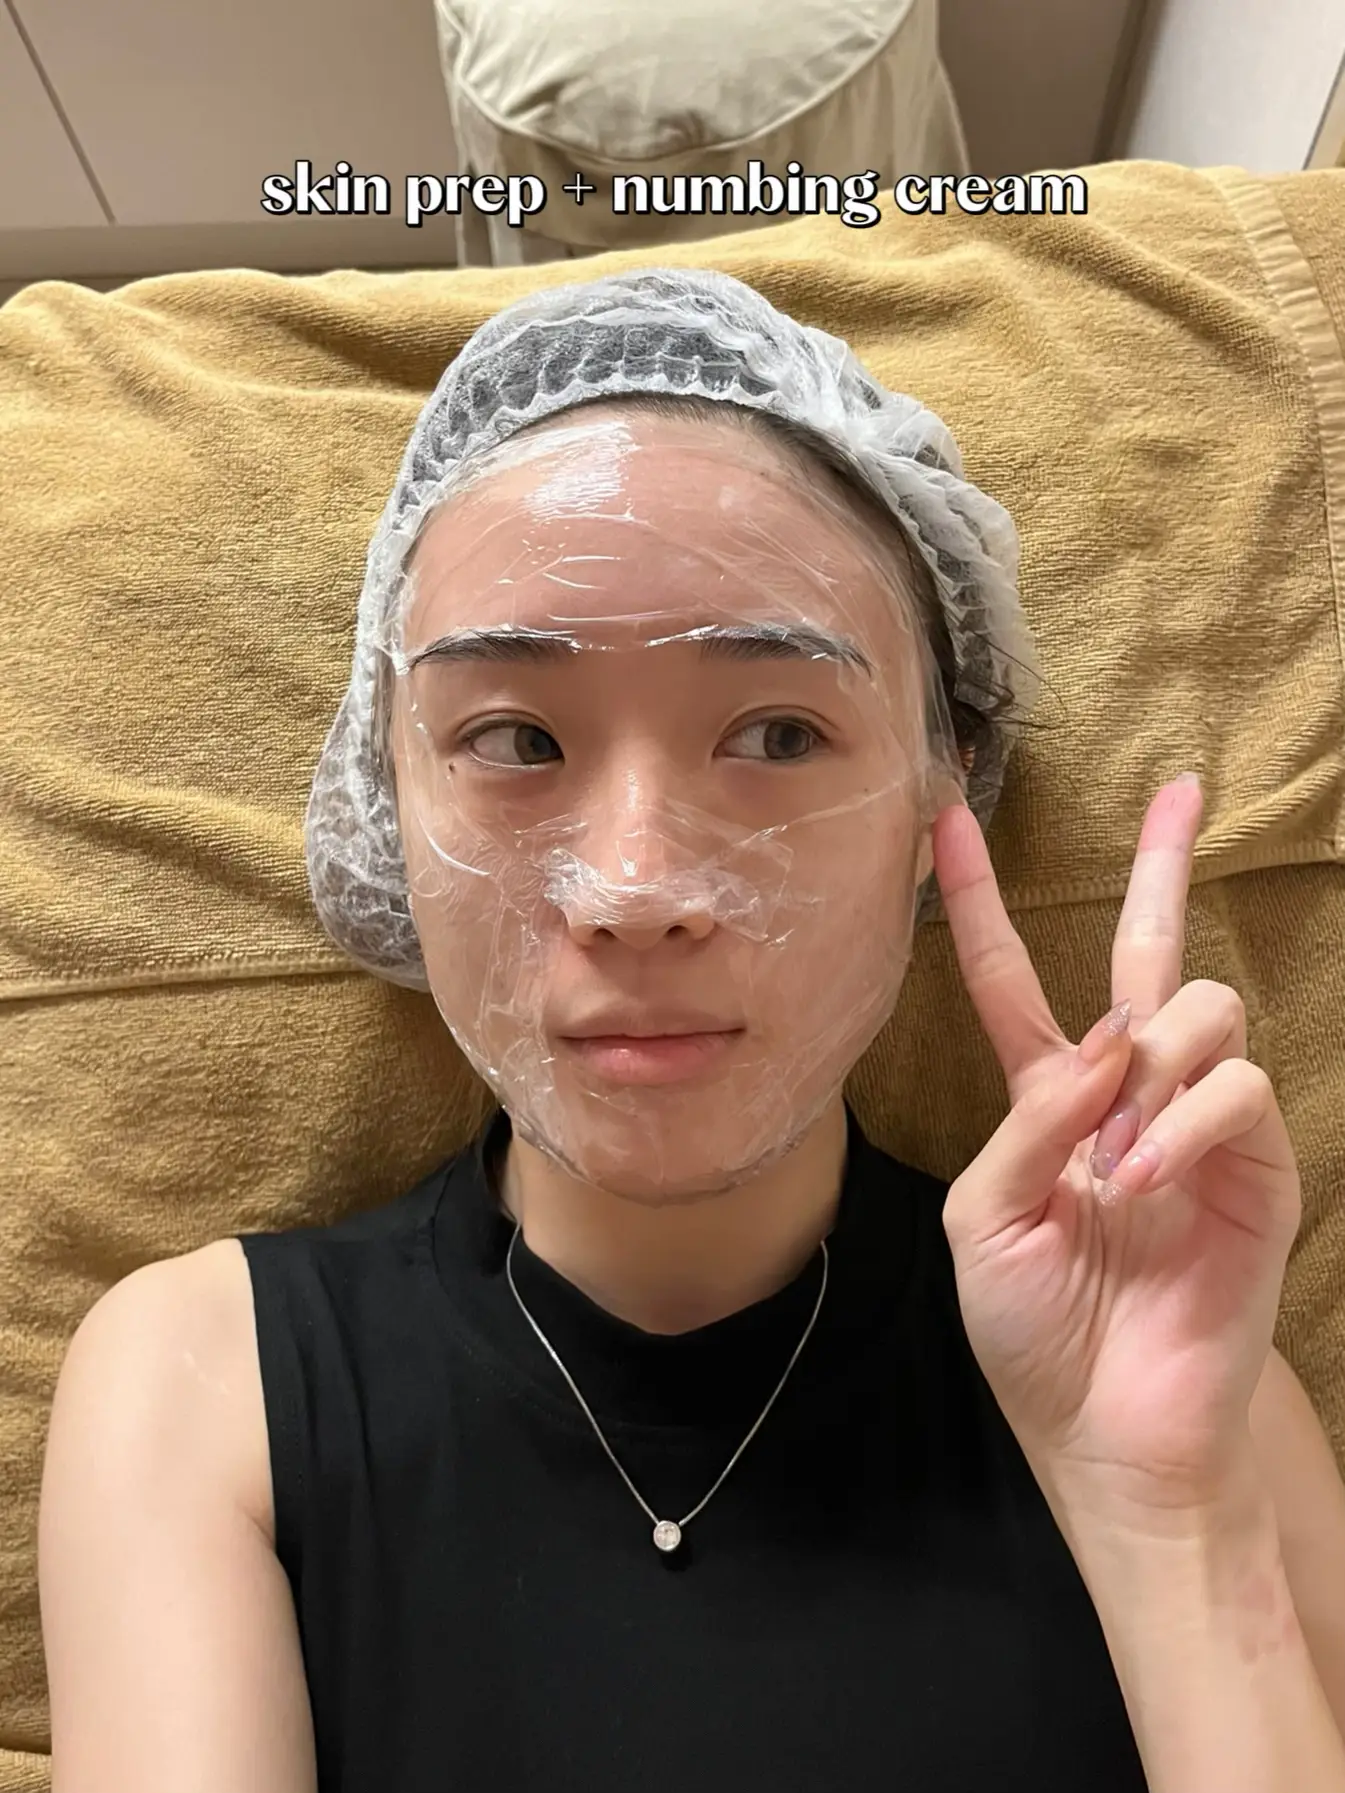 Pico Laser after 2 wks⚡️ Let’s talk skin treatments's images(3)